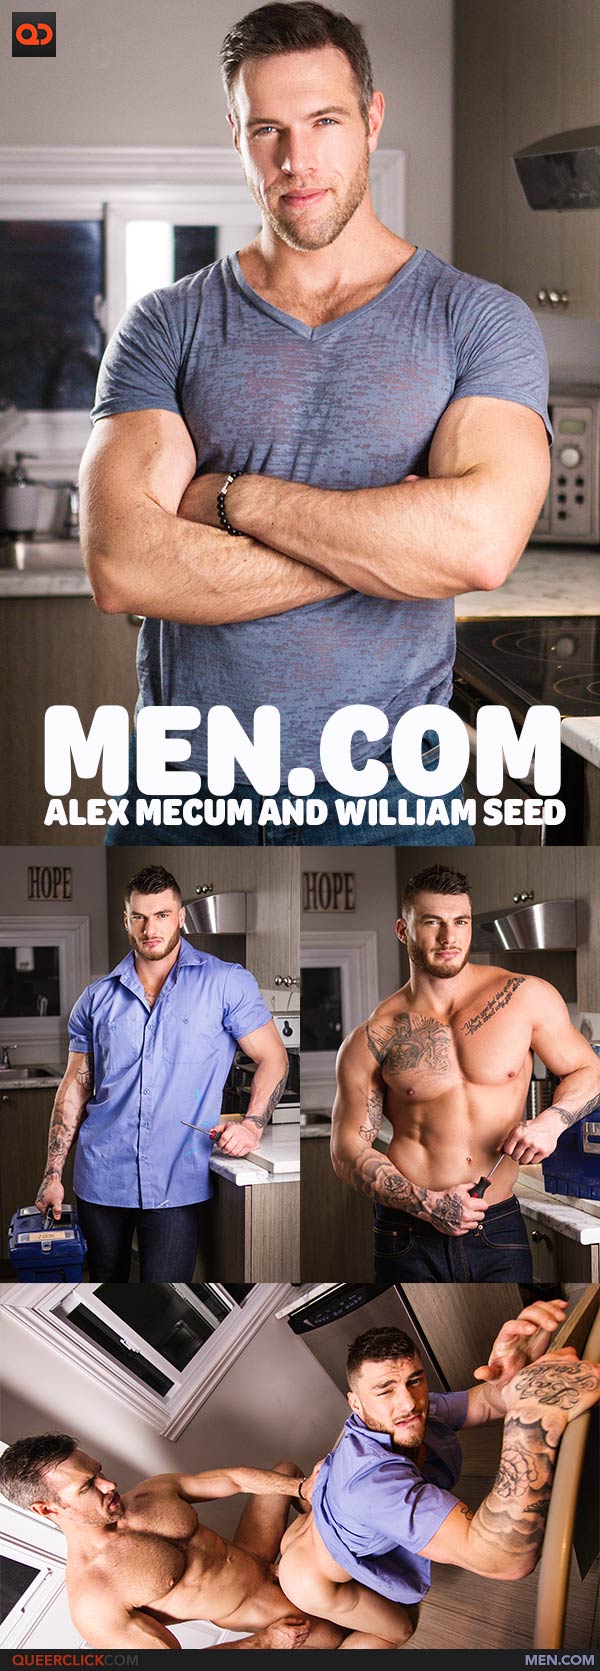 Men.com: Alex Mecum and William Seed